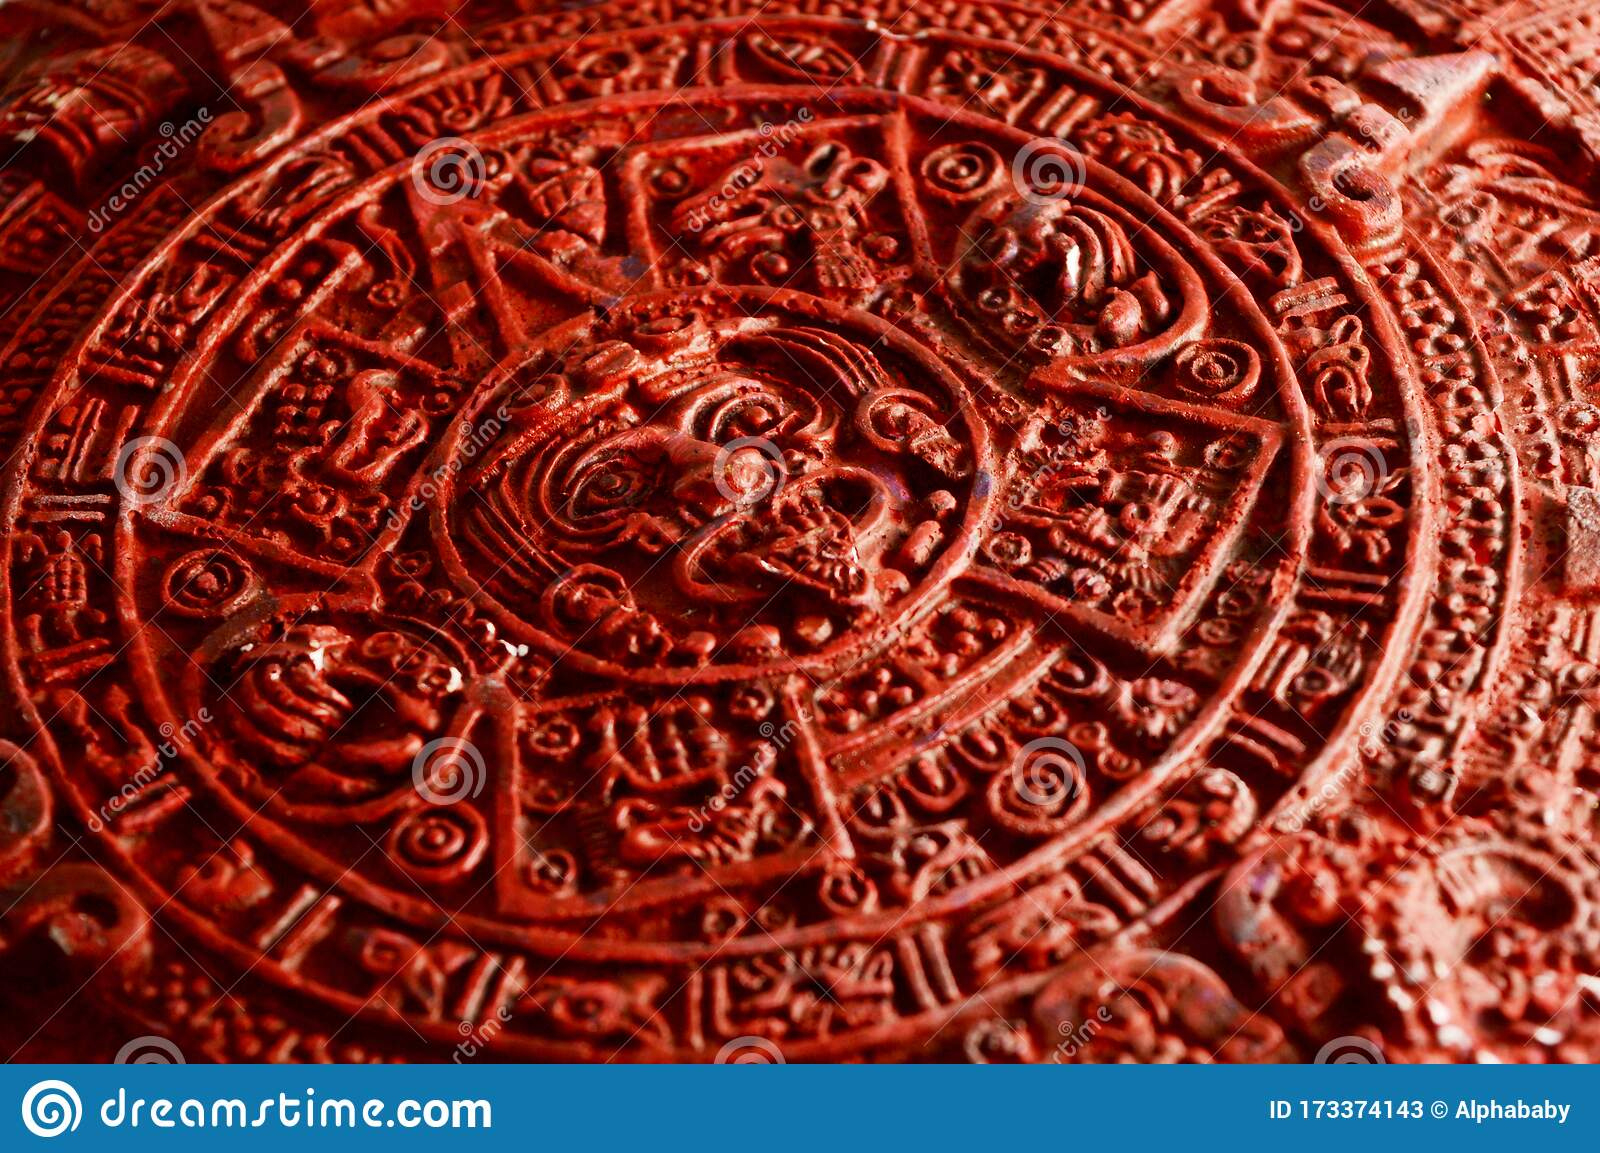 Detailed Mayan Calendar Stock Image. Image Of Chart Mayan Calendar Template Uks2